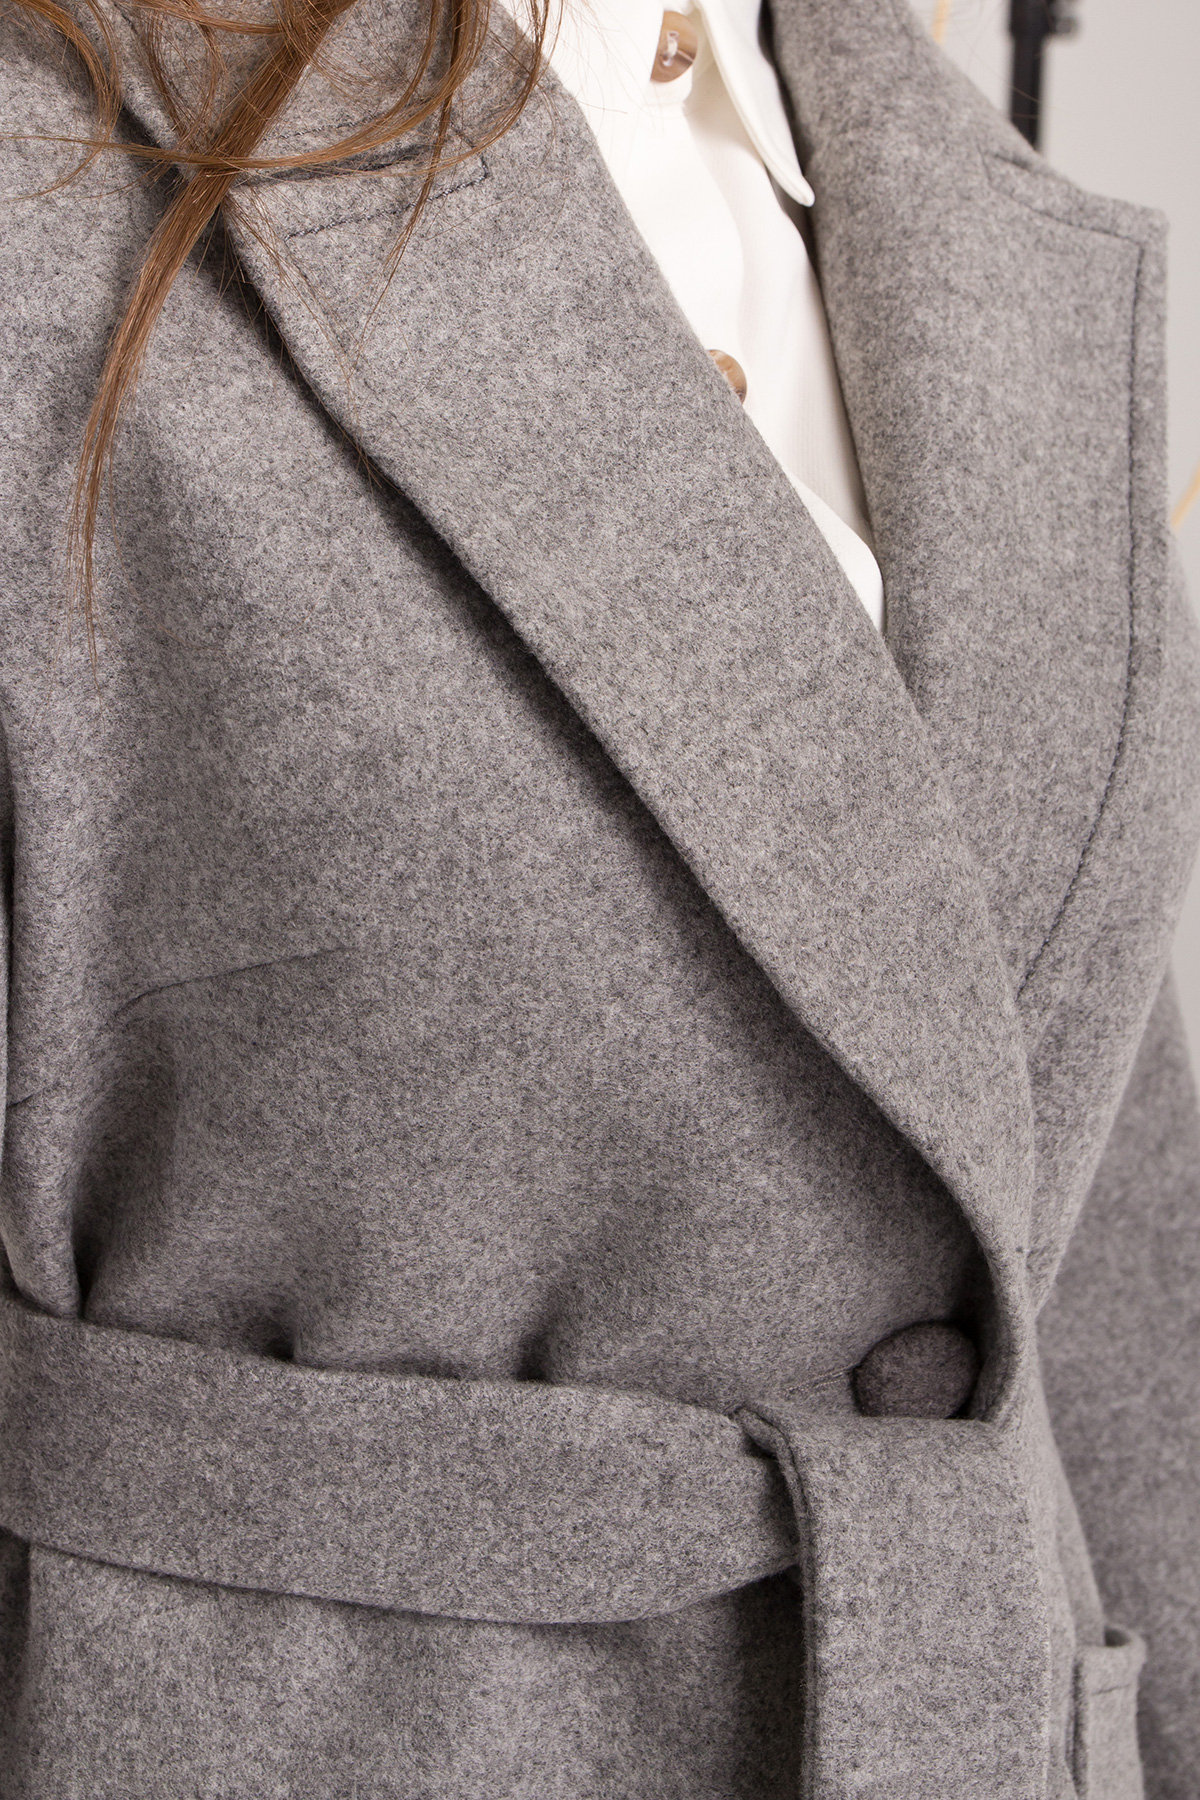 Пальто Вейсона 8801 АРТ. 45139 Цвет: Серый меланж - фото 5, интернет магазин tm-modus.ru